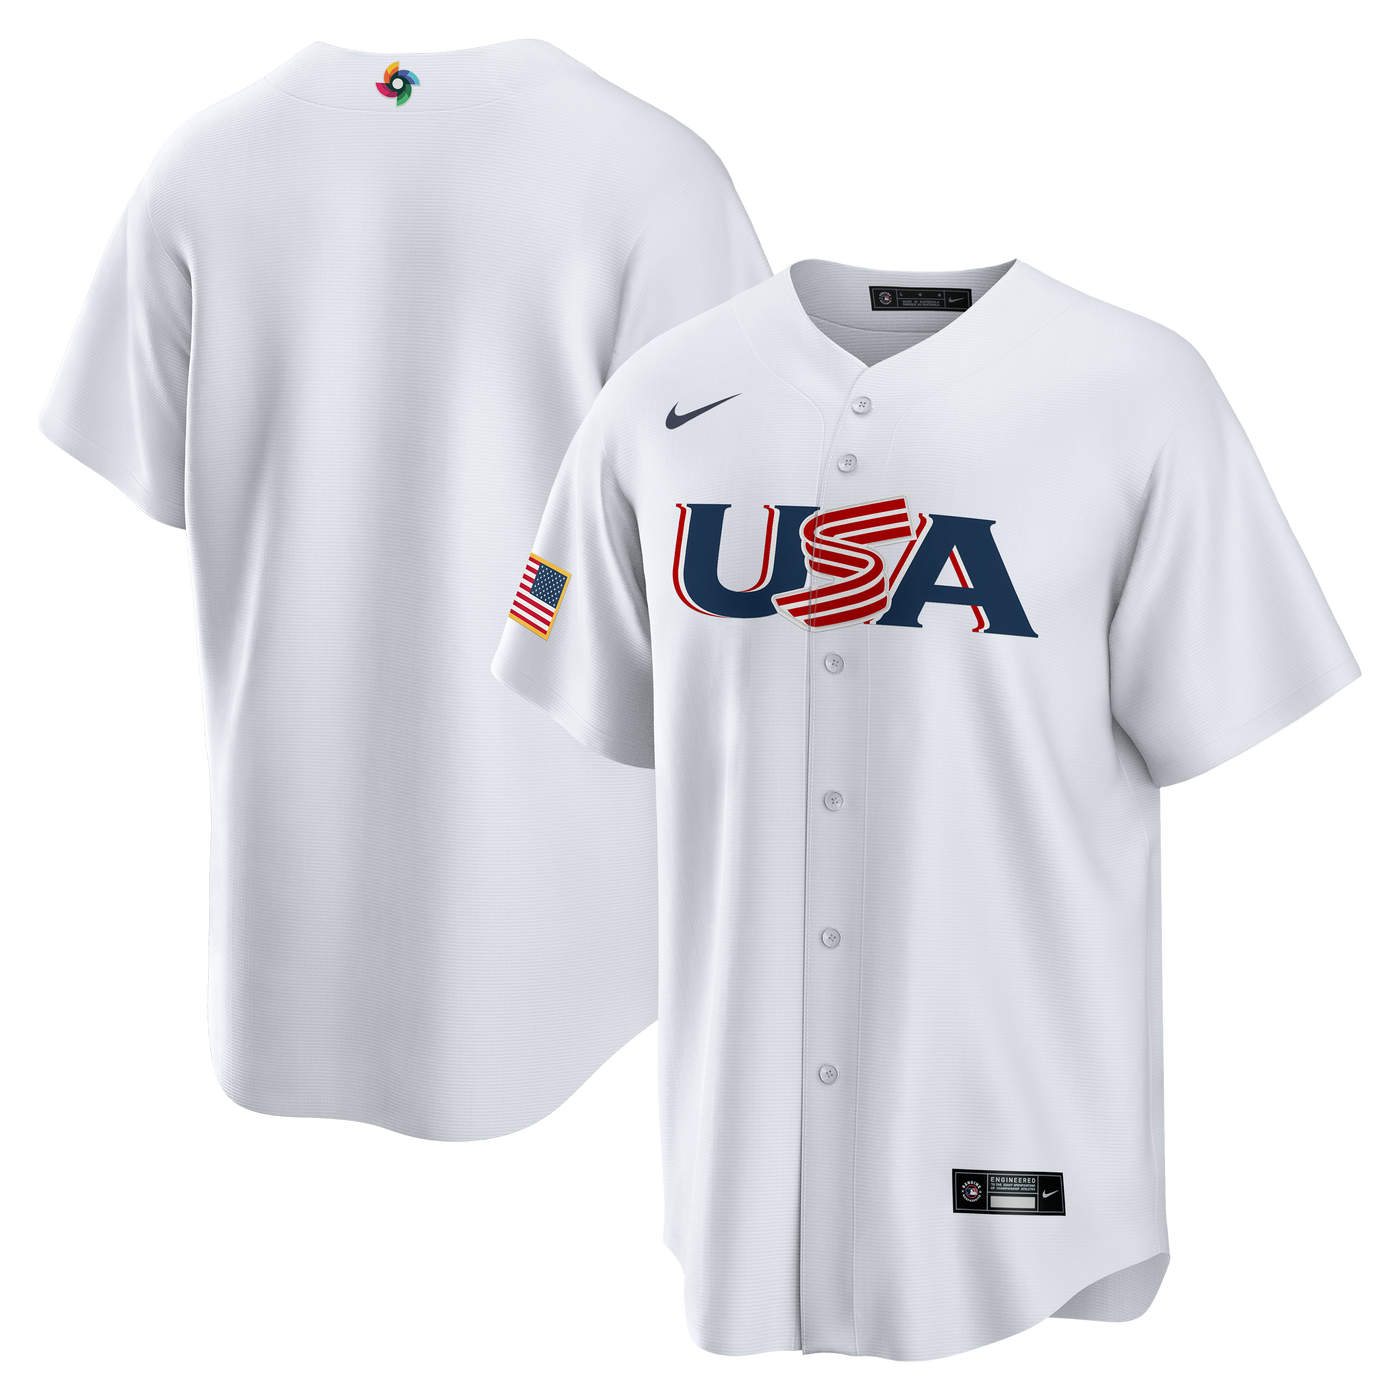 USA Baseball Apparel, USA Baseball Gear, USA Baseball Merch